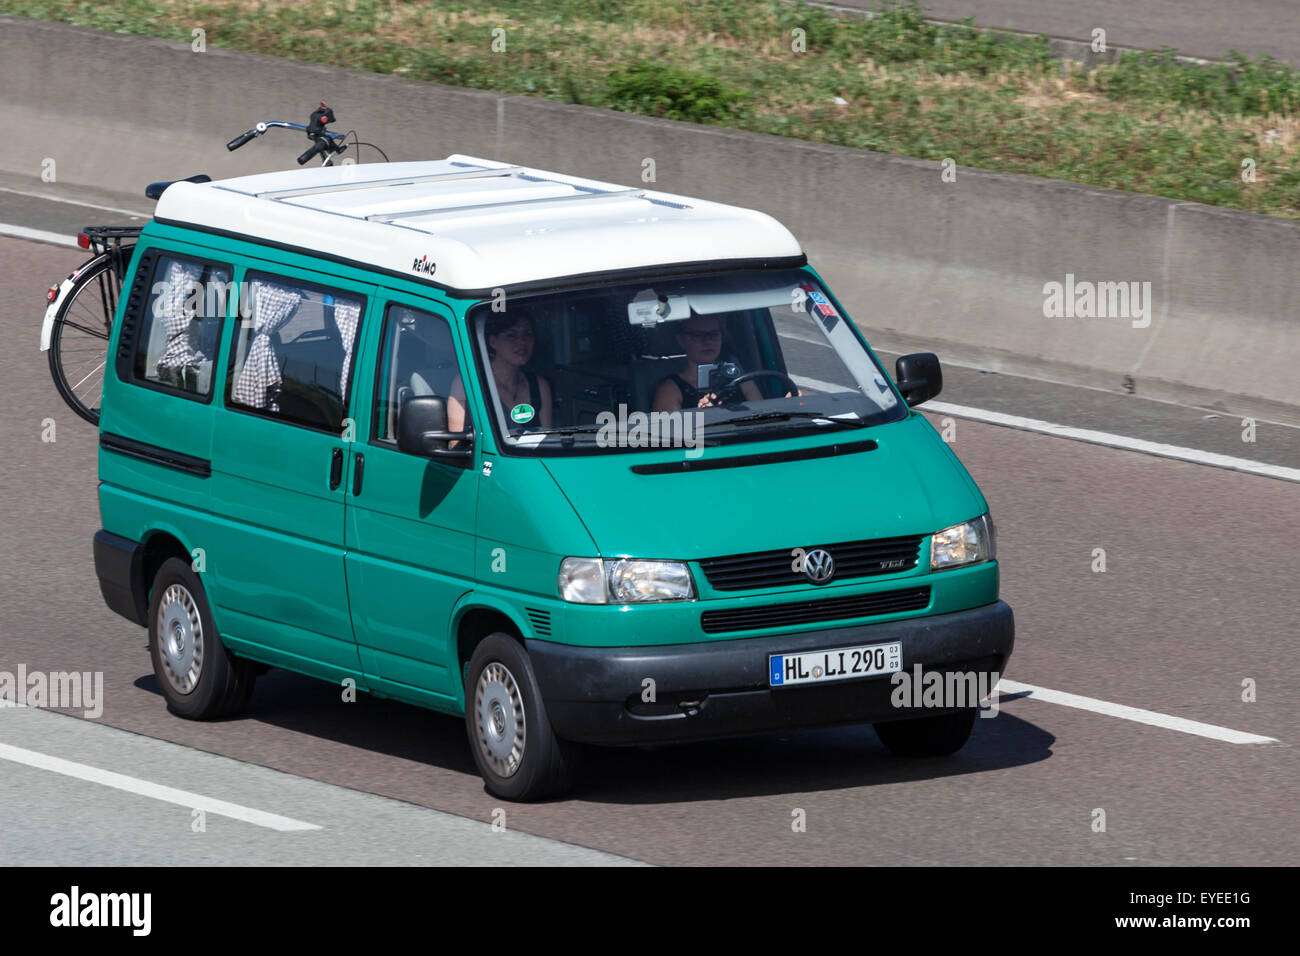 Volkswagen T4 Reimo camping van se déplaçant rapidement sur l'autoroute Banque D'Images